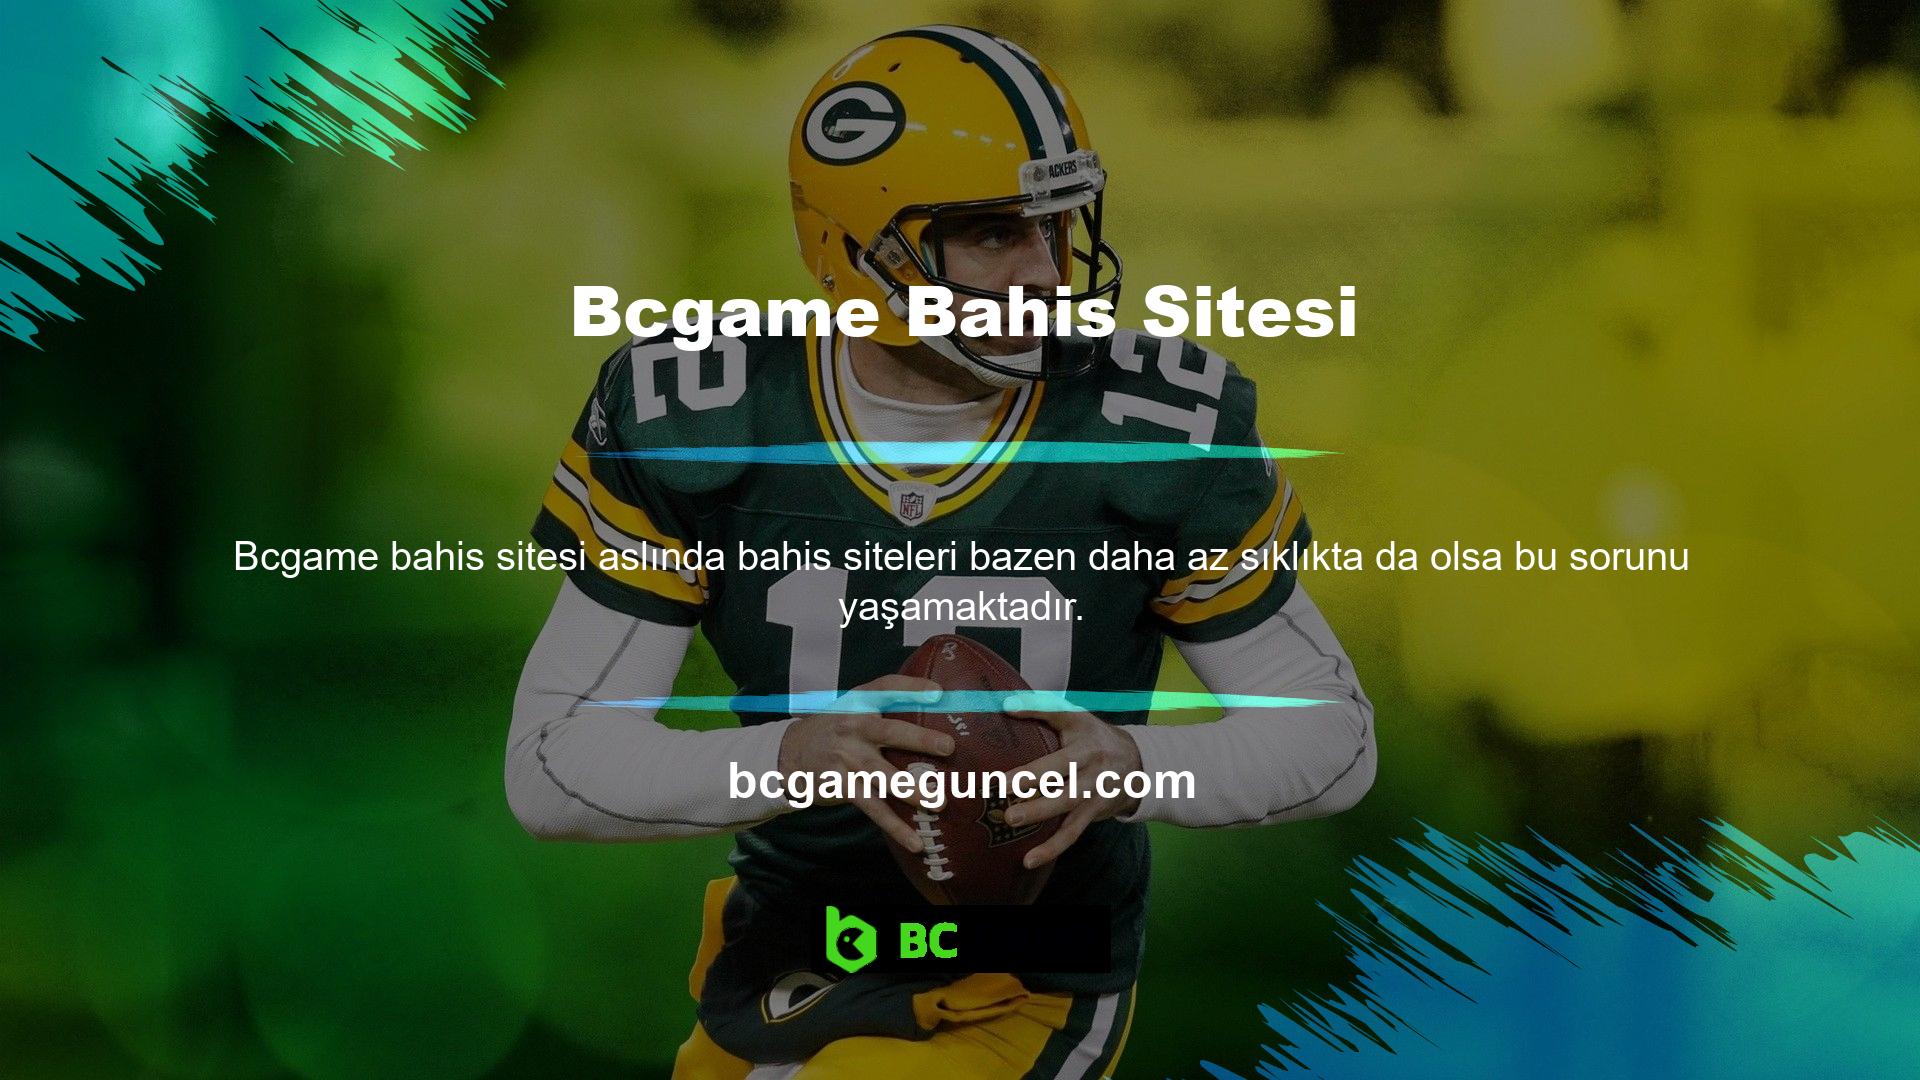 Yeni Bcgame giriş adresinizi kullanarak ziyaret ettiğiniz web sitesi, yeni Bcgame erişmeniz için sizi bekleyen platformlardan biridir